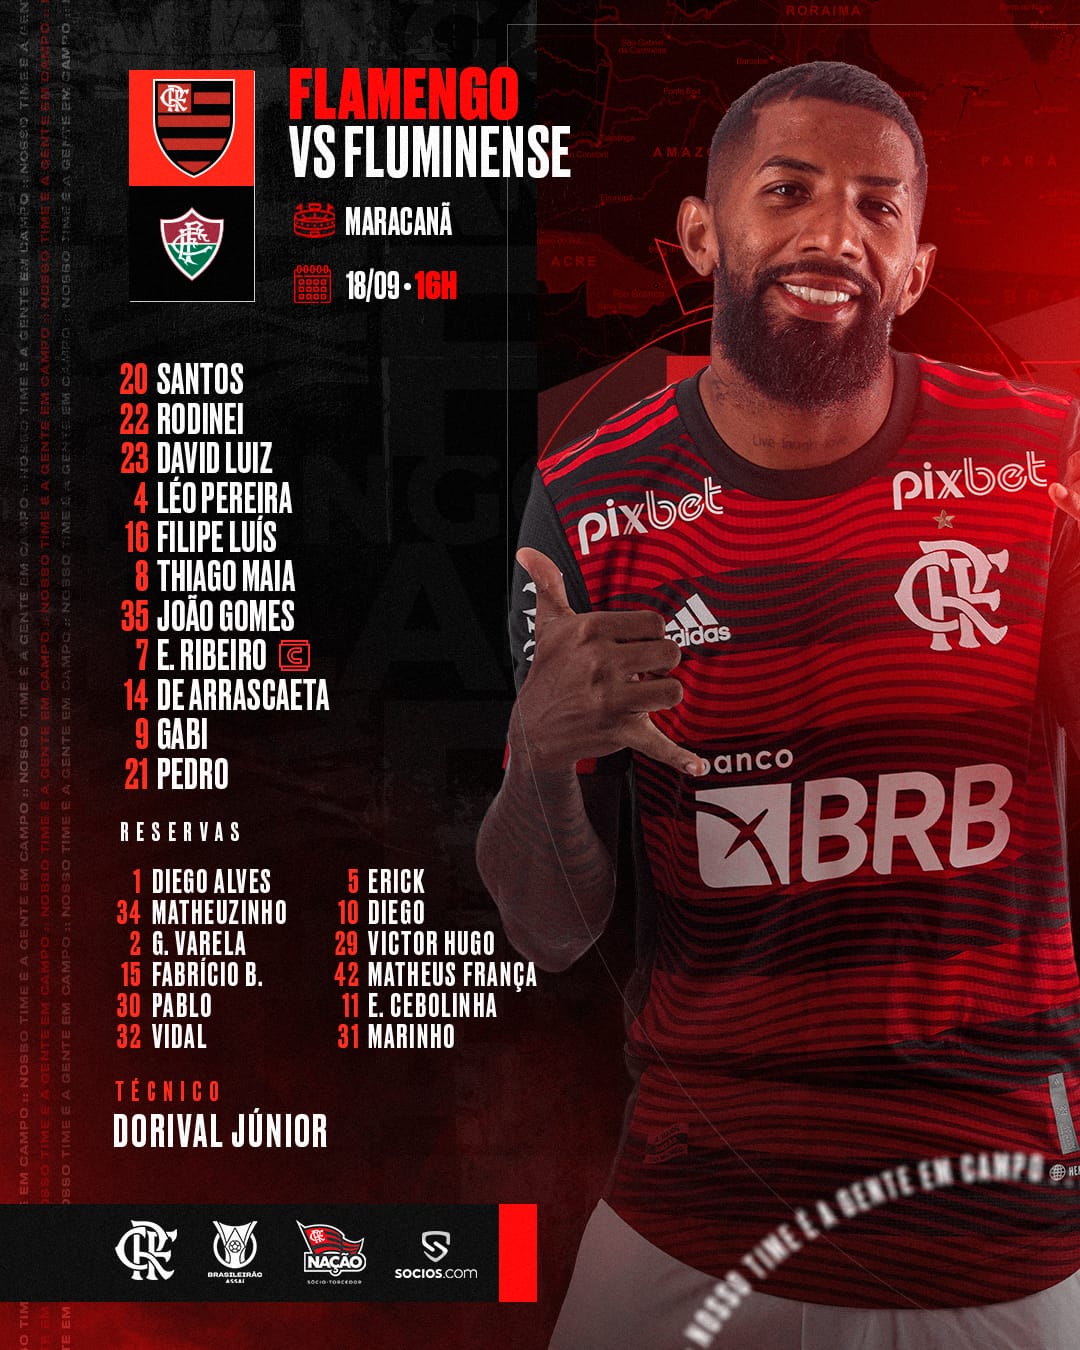 Jogo do Flamengo hoje - Fluminense x Flamengo - Coluna do Fla